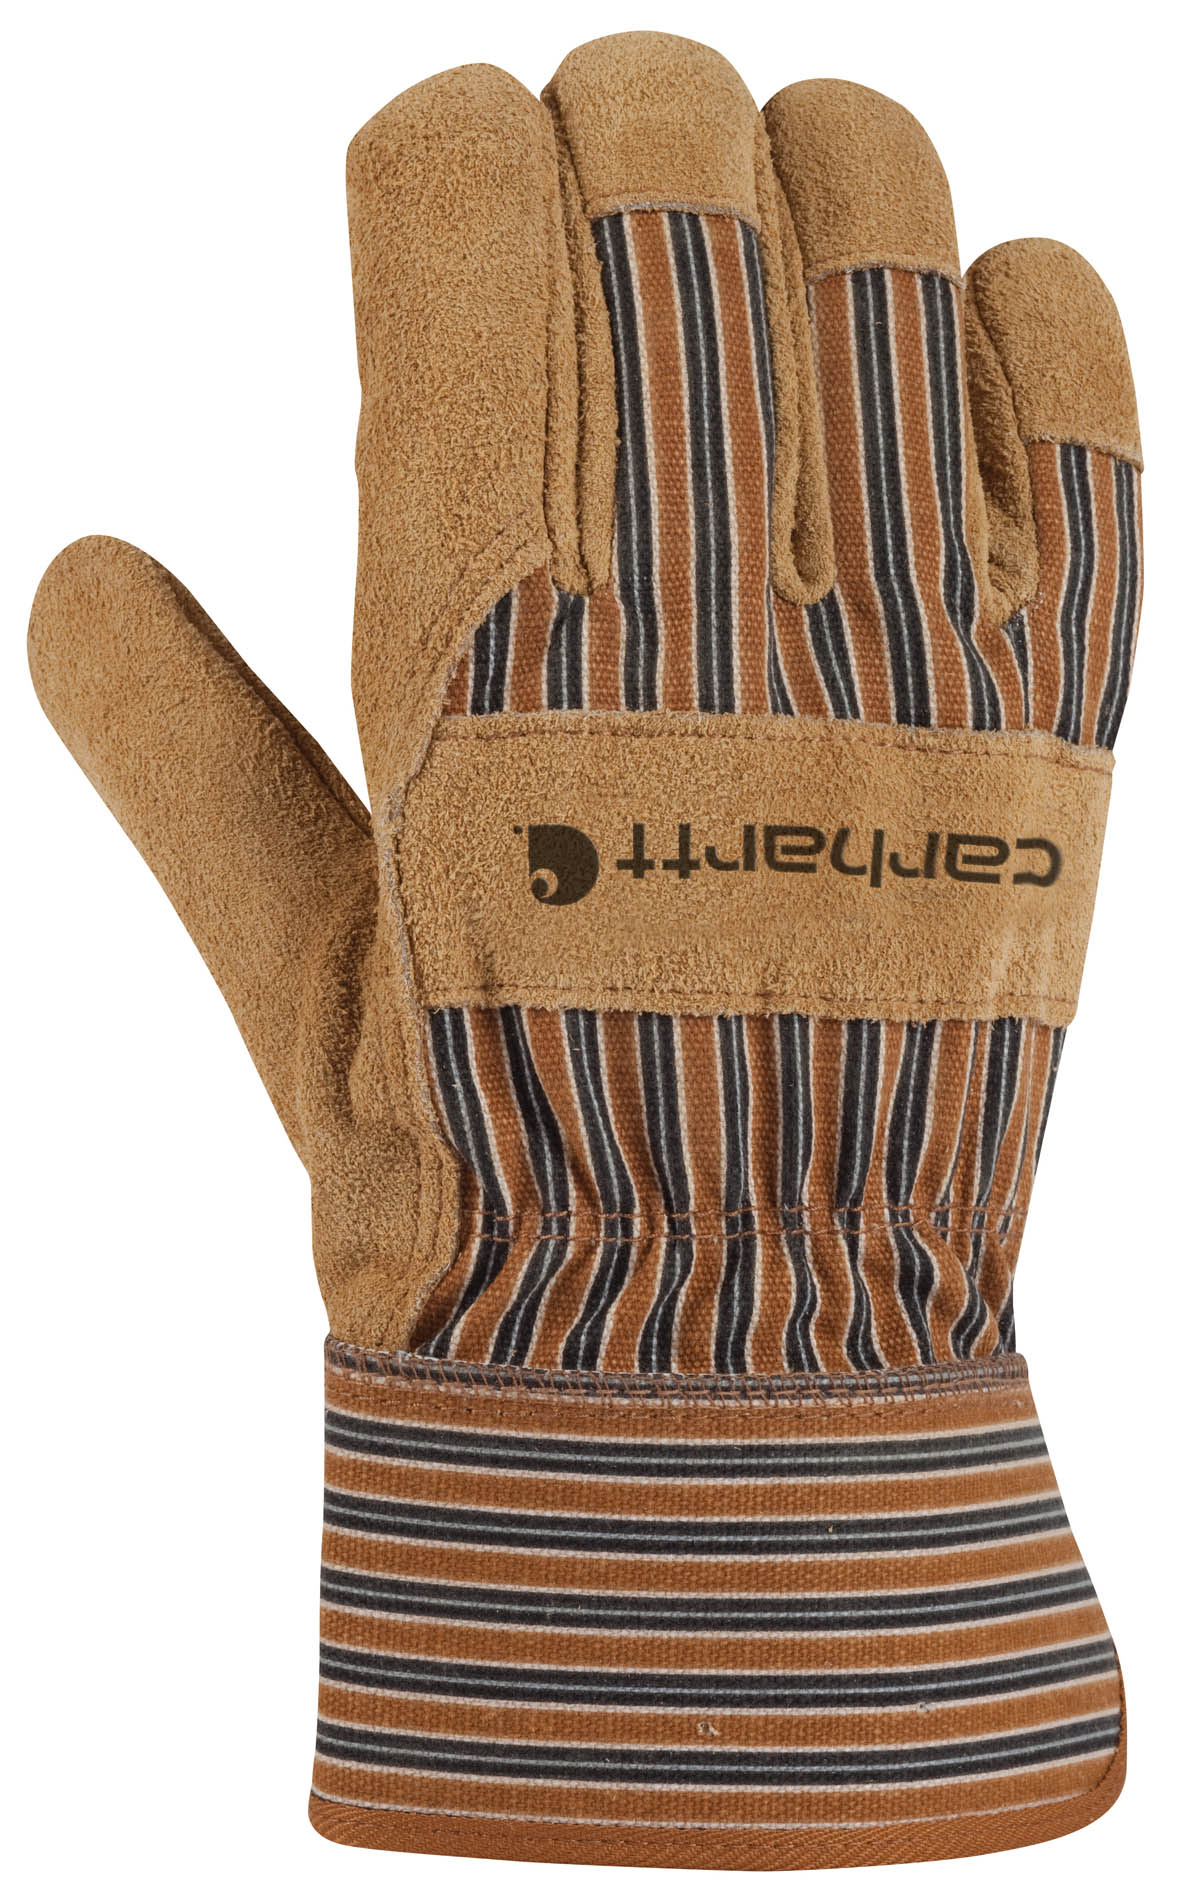 Carhartt Men's Insulated Suede Work Glove Safety Cuff